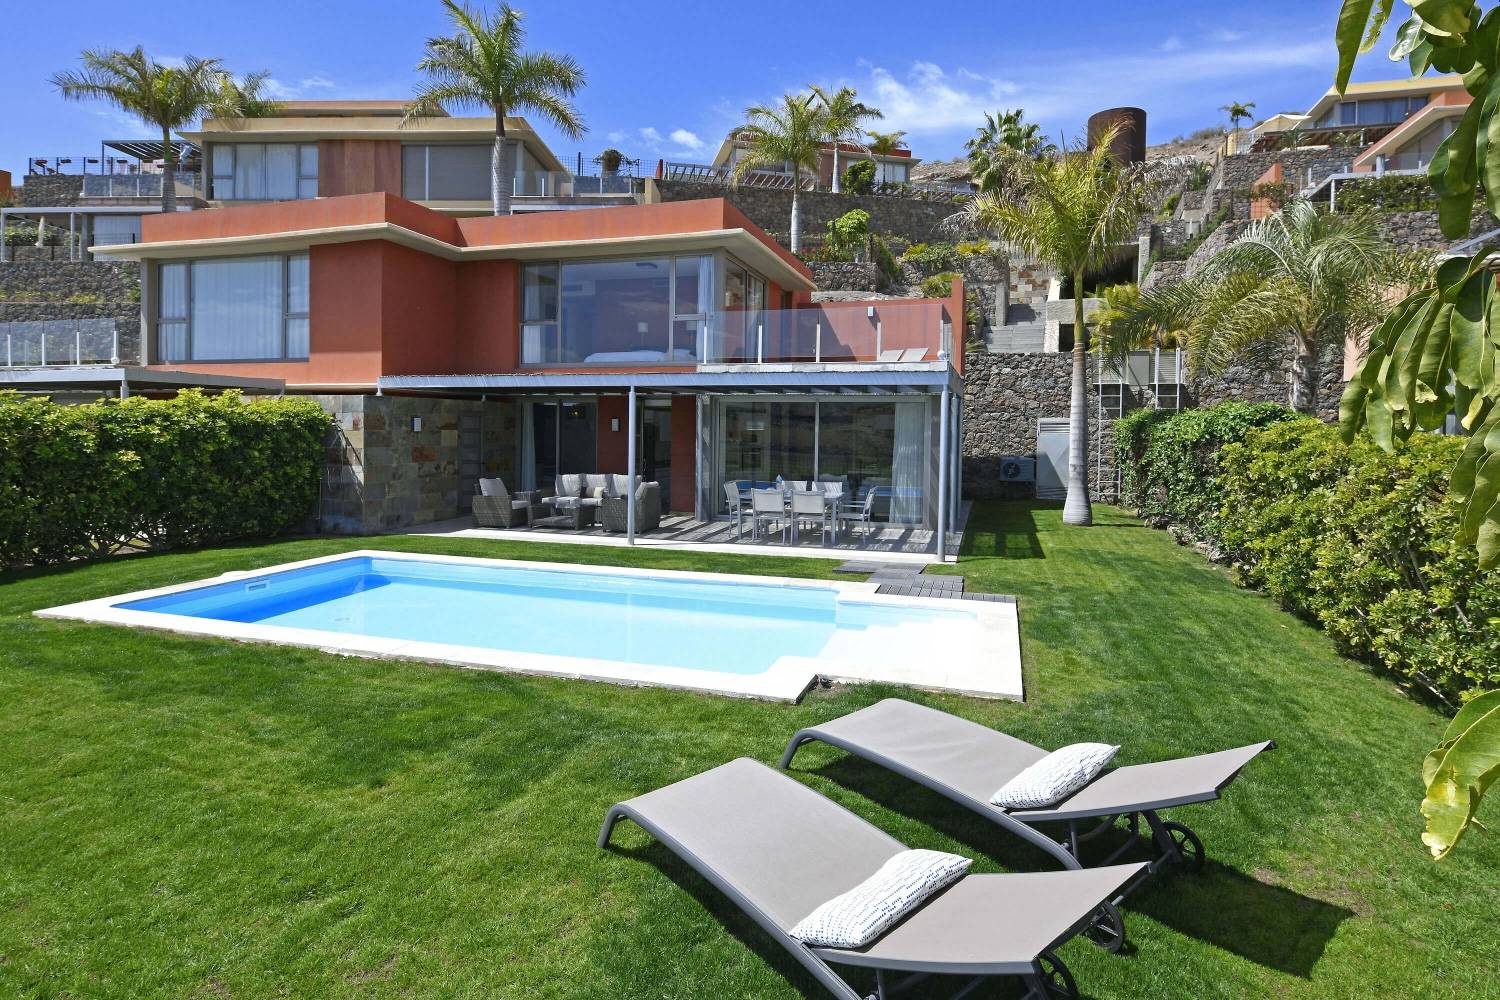 Stilvolle Villa direkt am Golfplatz mit modernem Interieur, Garten mit privatem Pool und schöner Aussicht